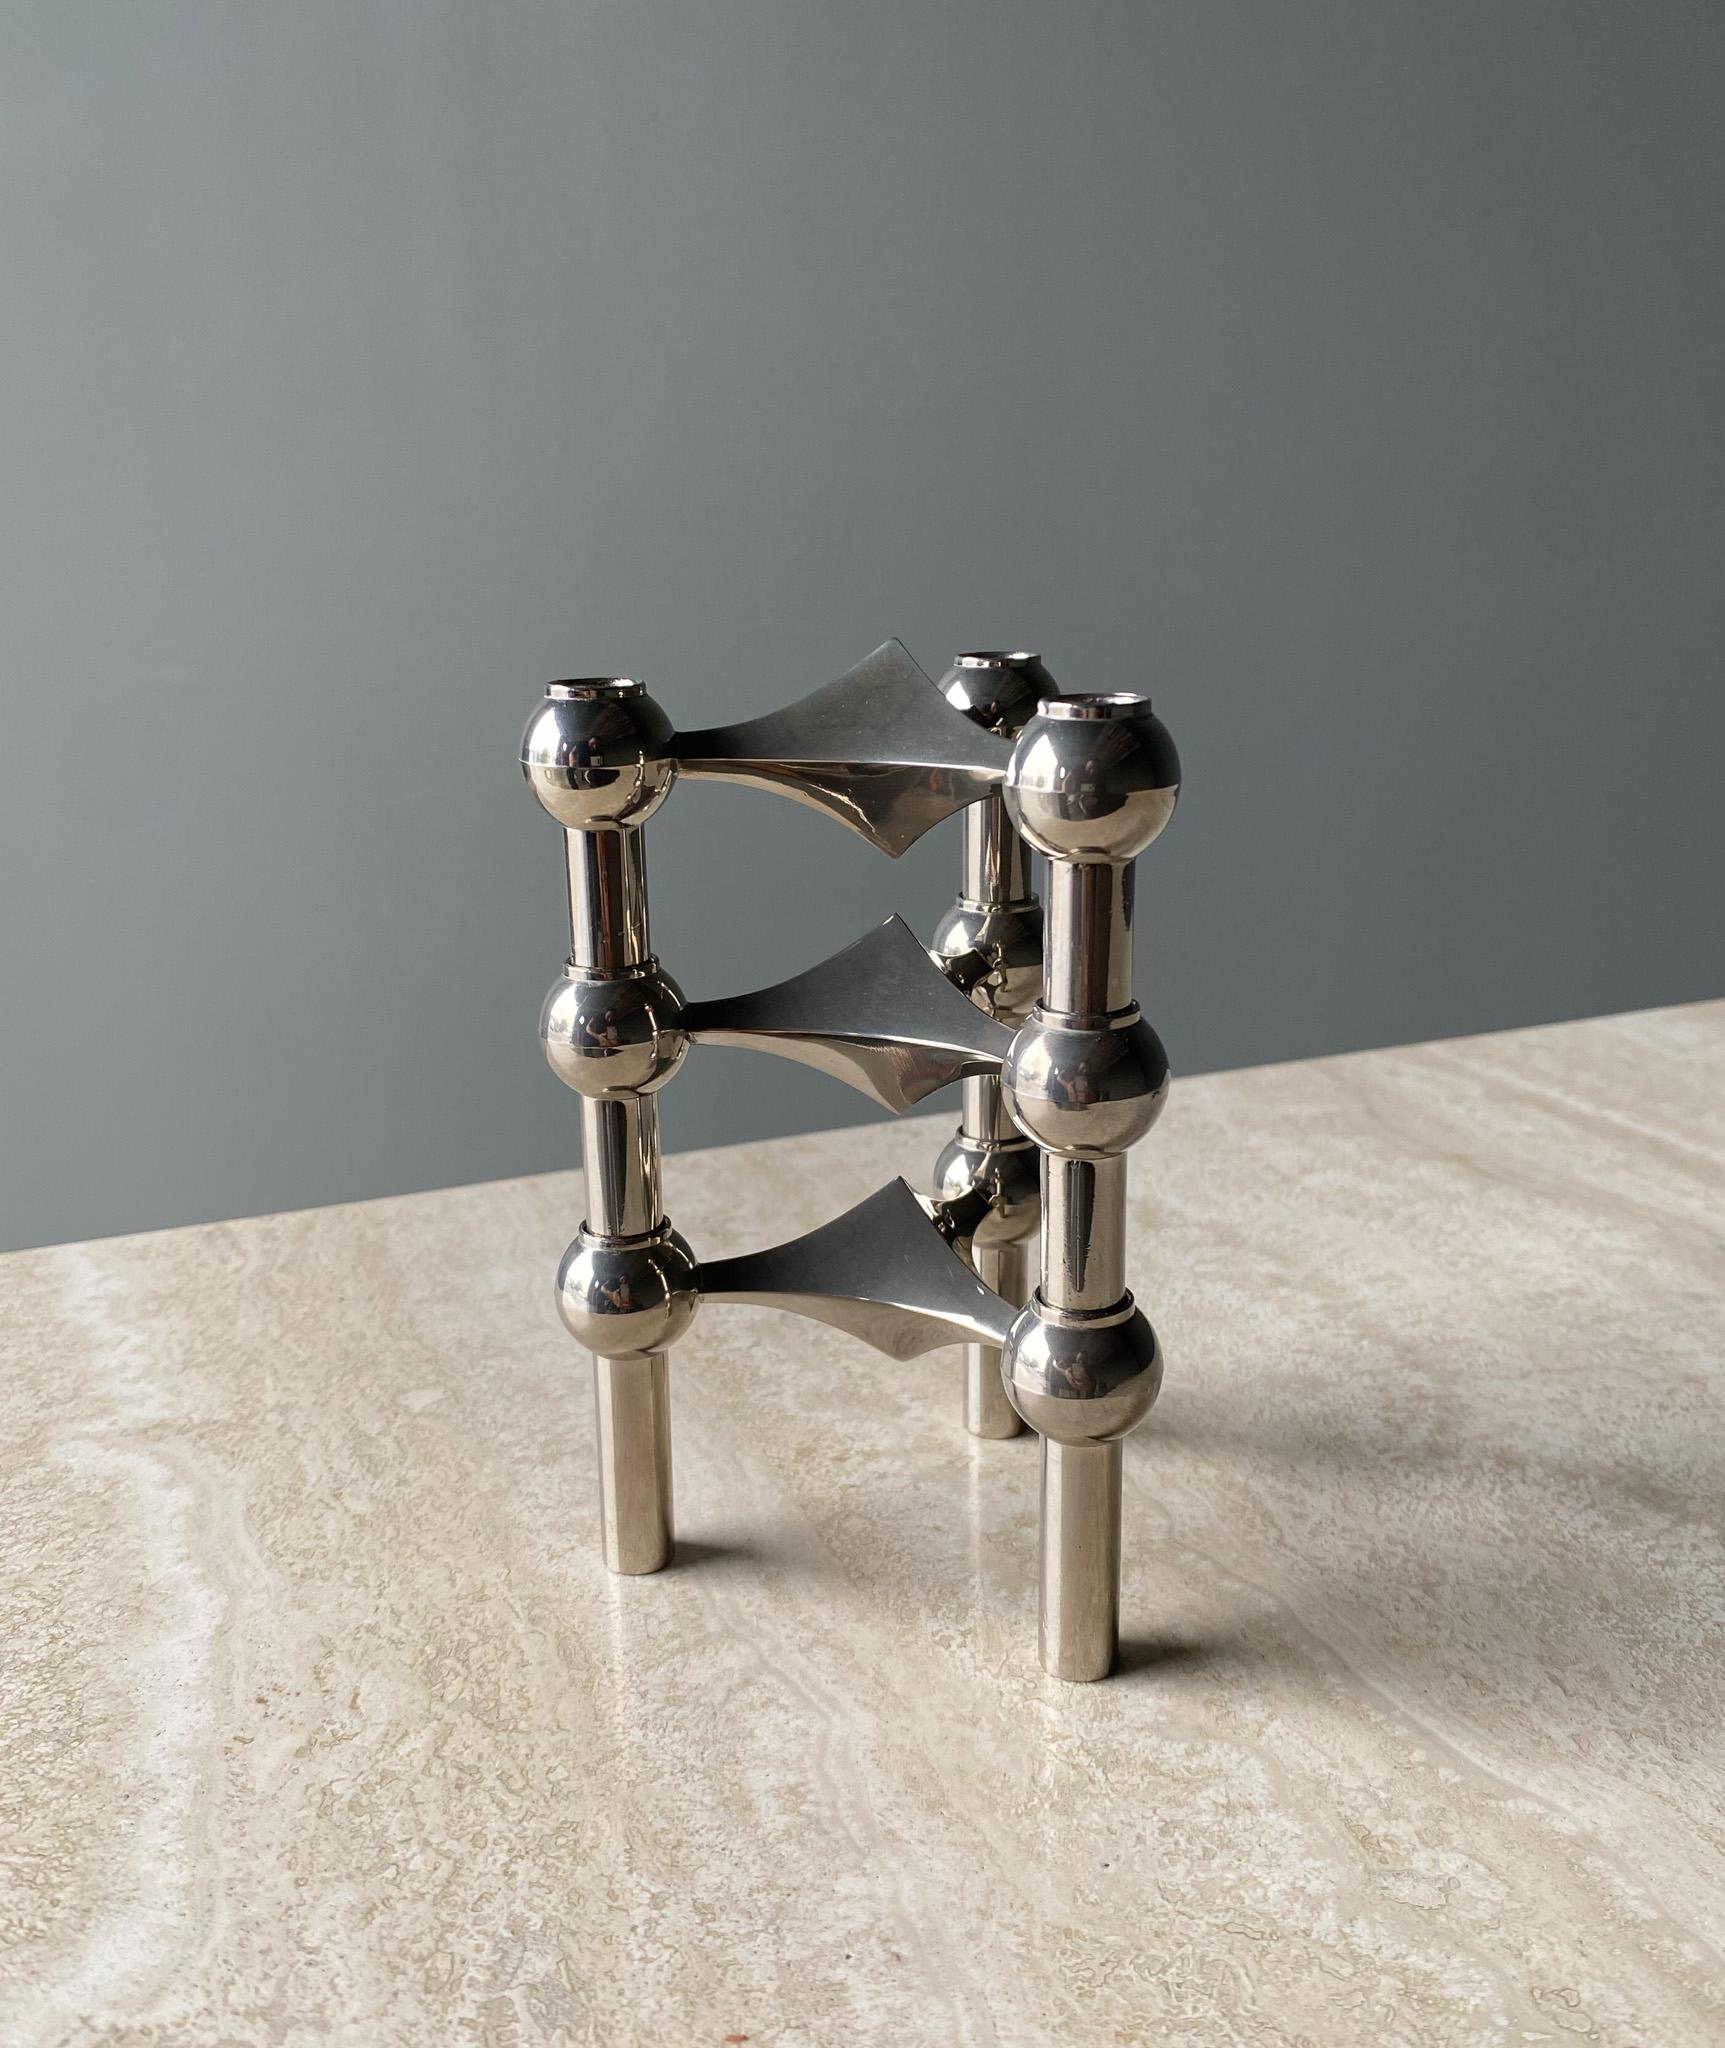 Stoff Nagel Candleholder Designed by Werner Stoff for Metalworker Hans Nagel 7